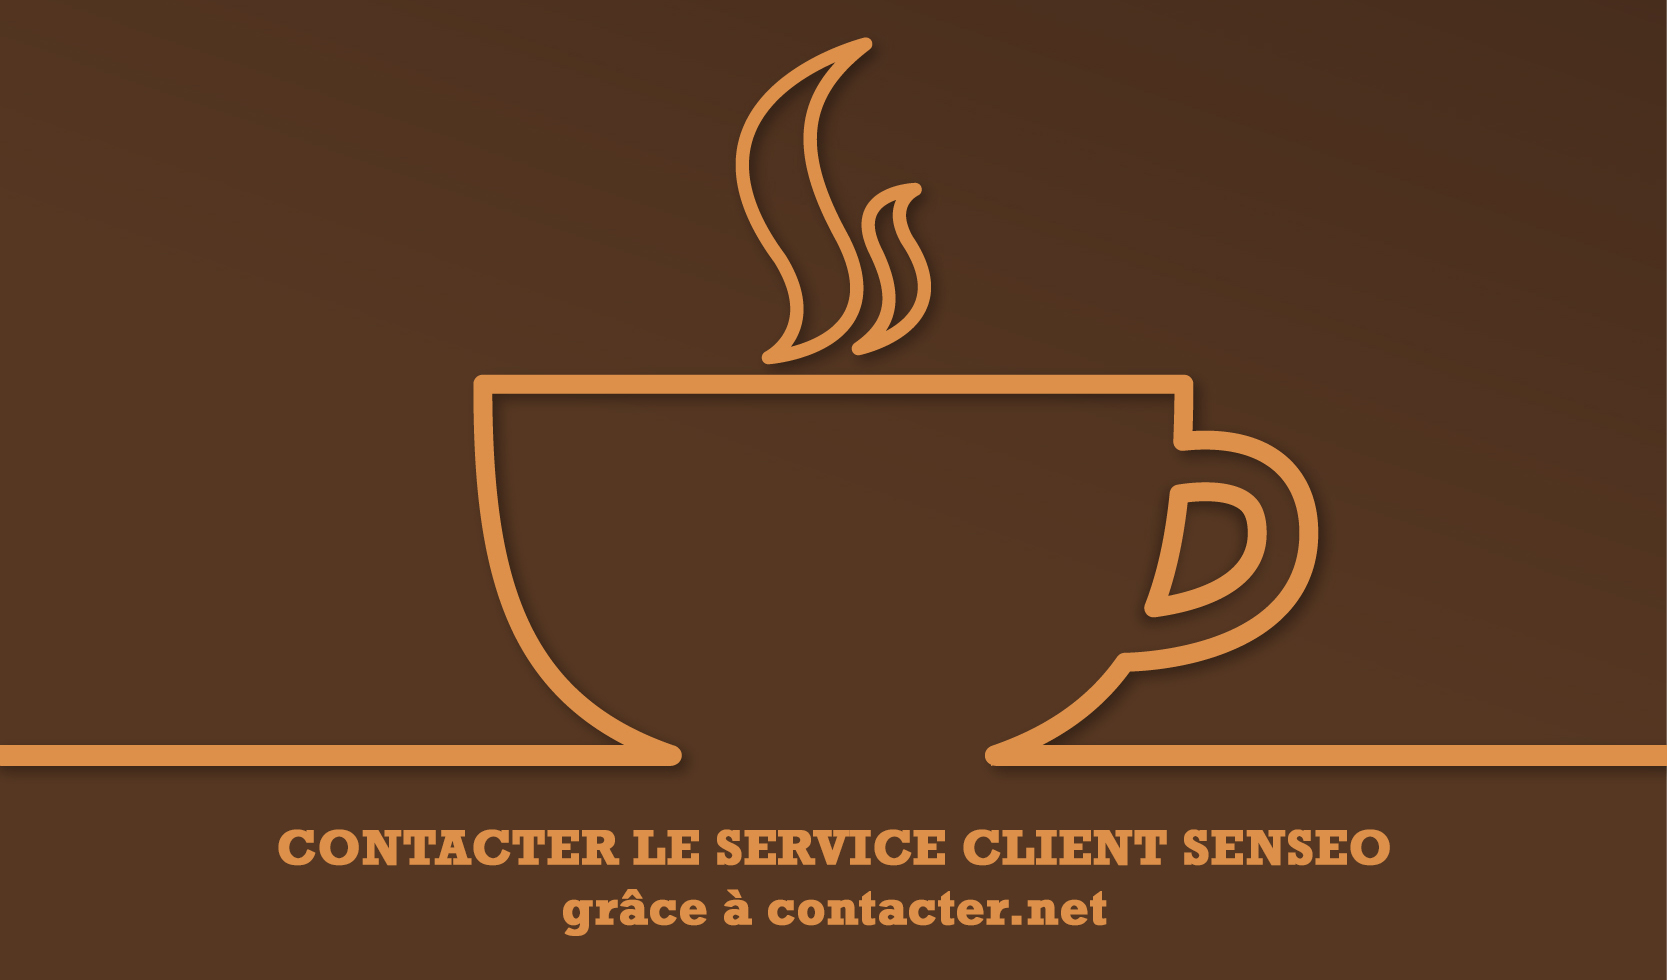 Service client senso